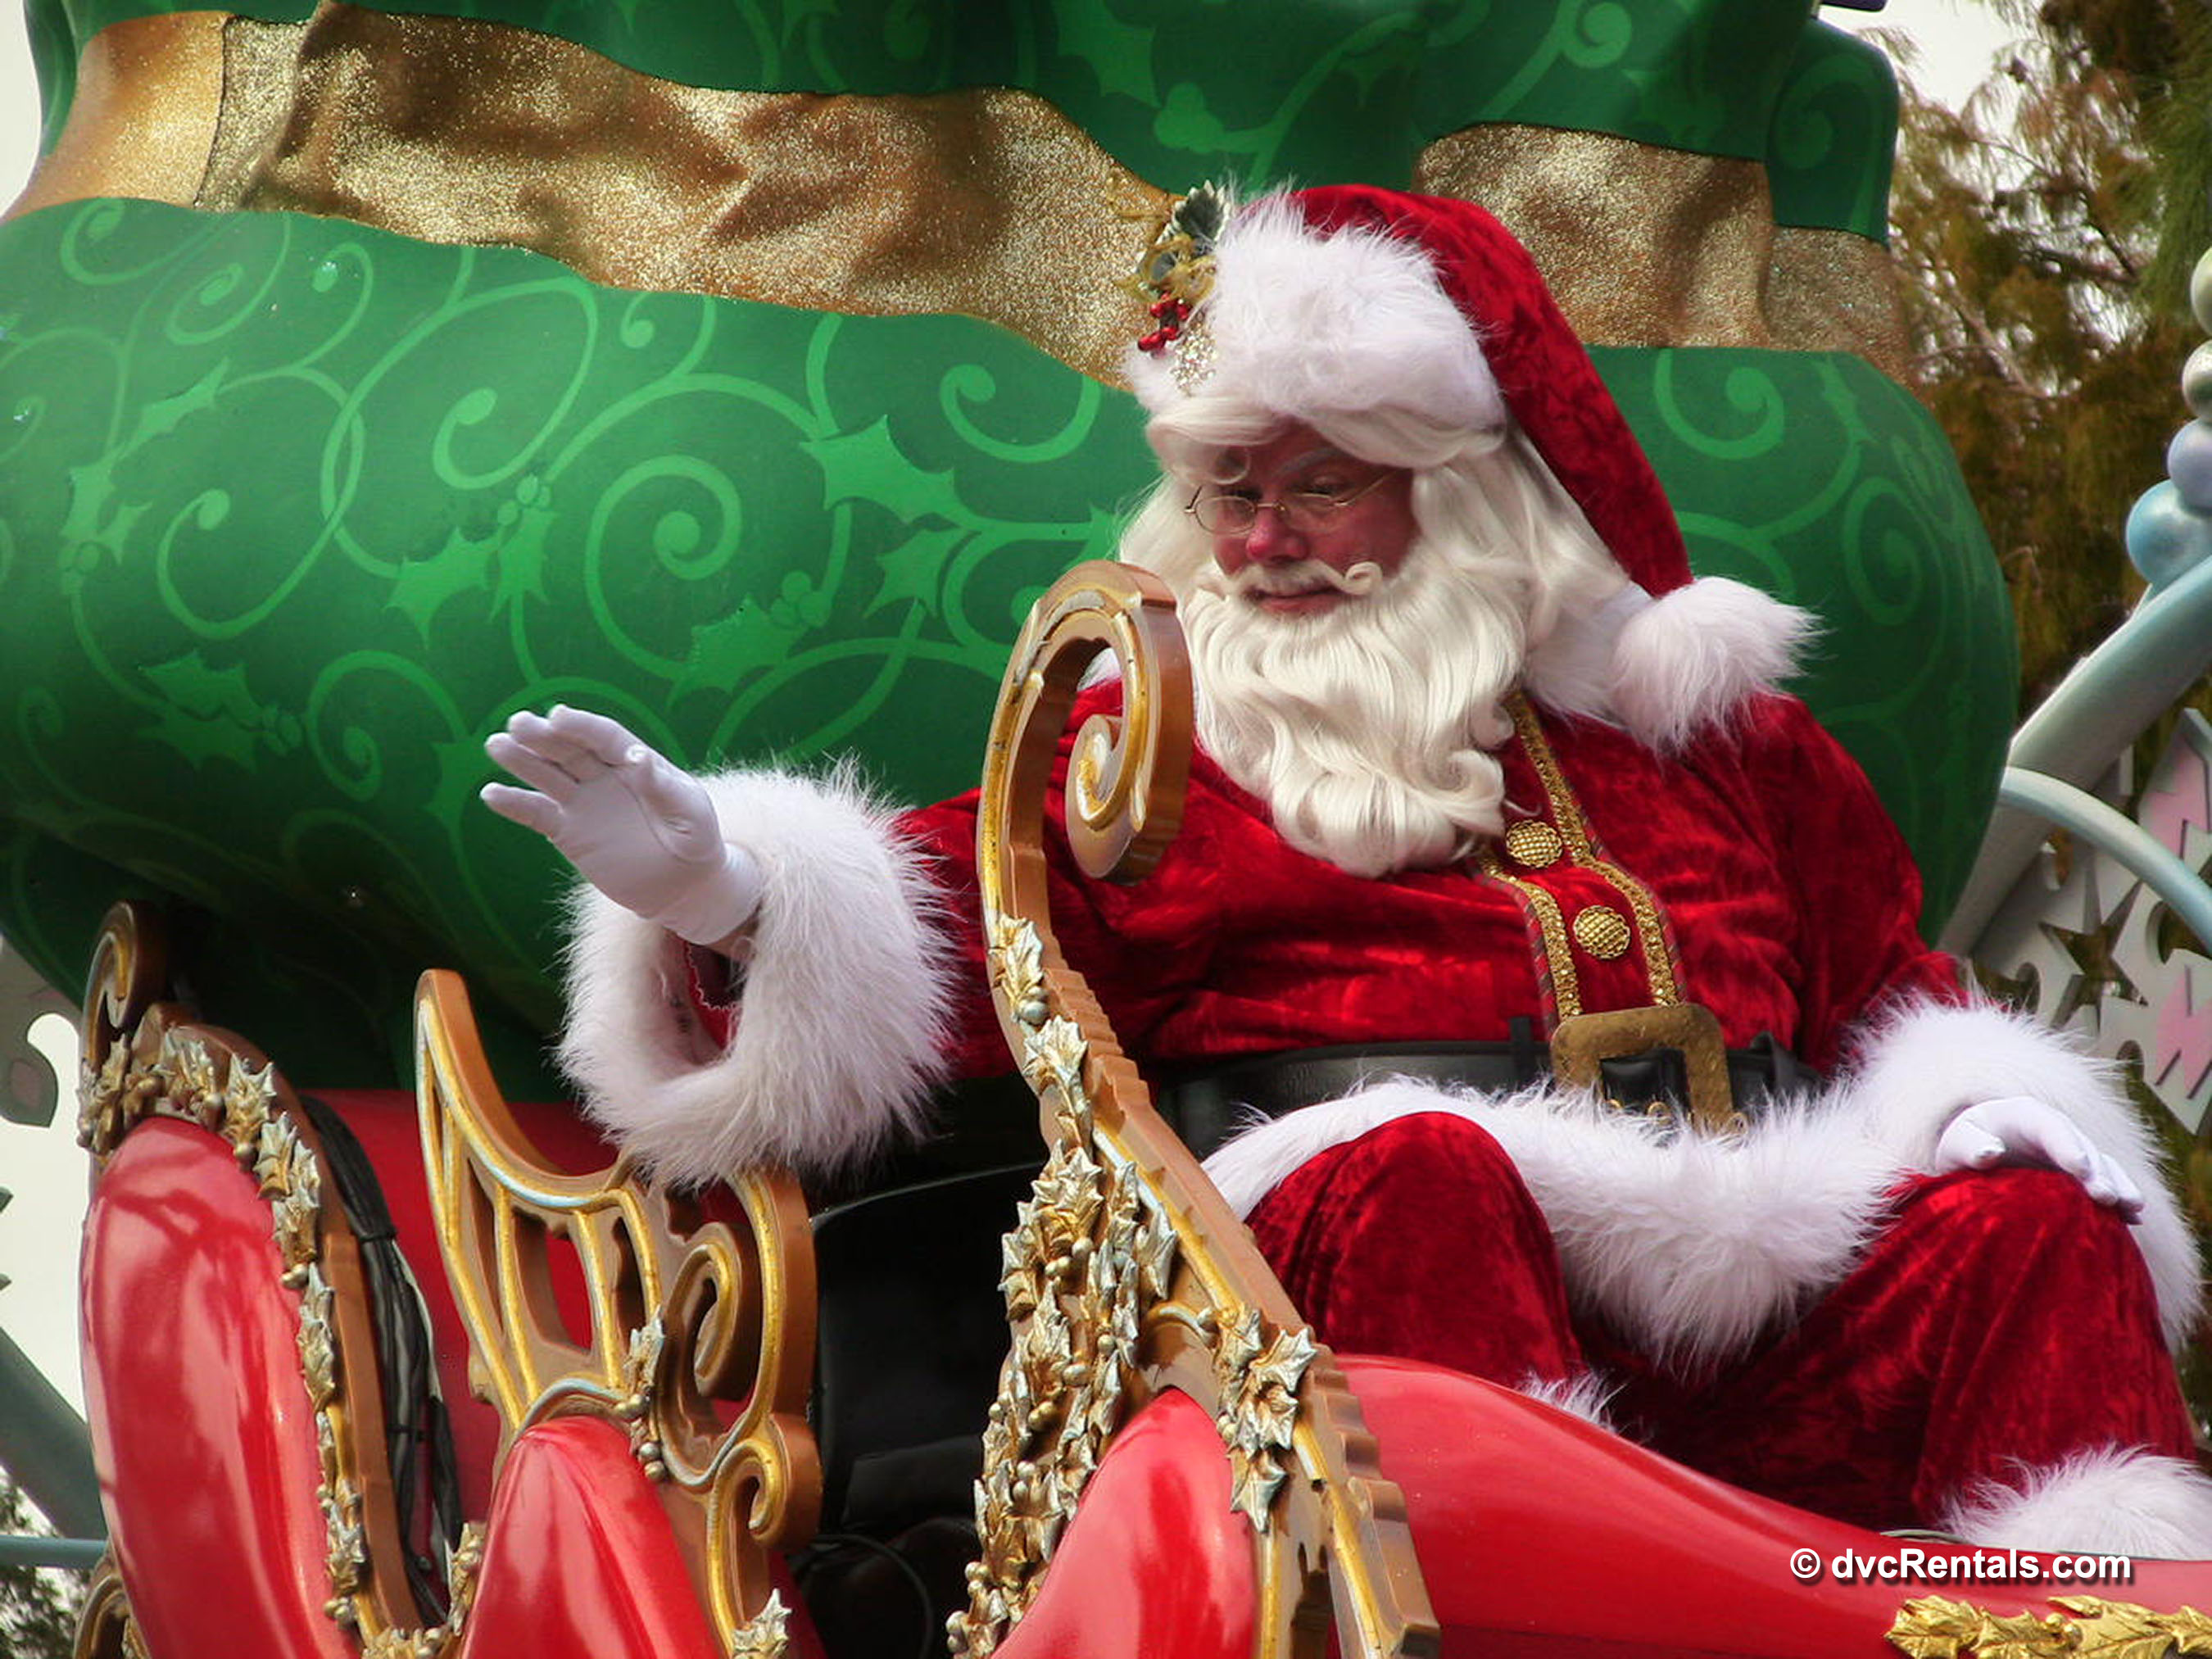 Santa Claus at the end of Magic Kingdom’s Christmas Parade